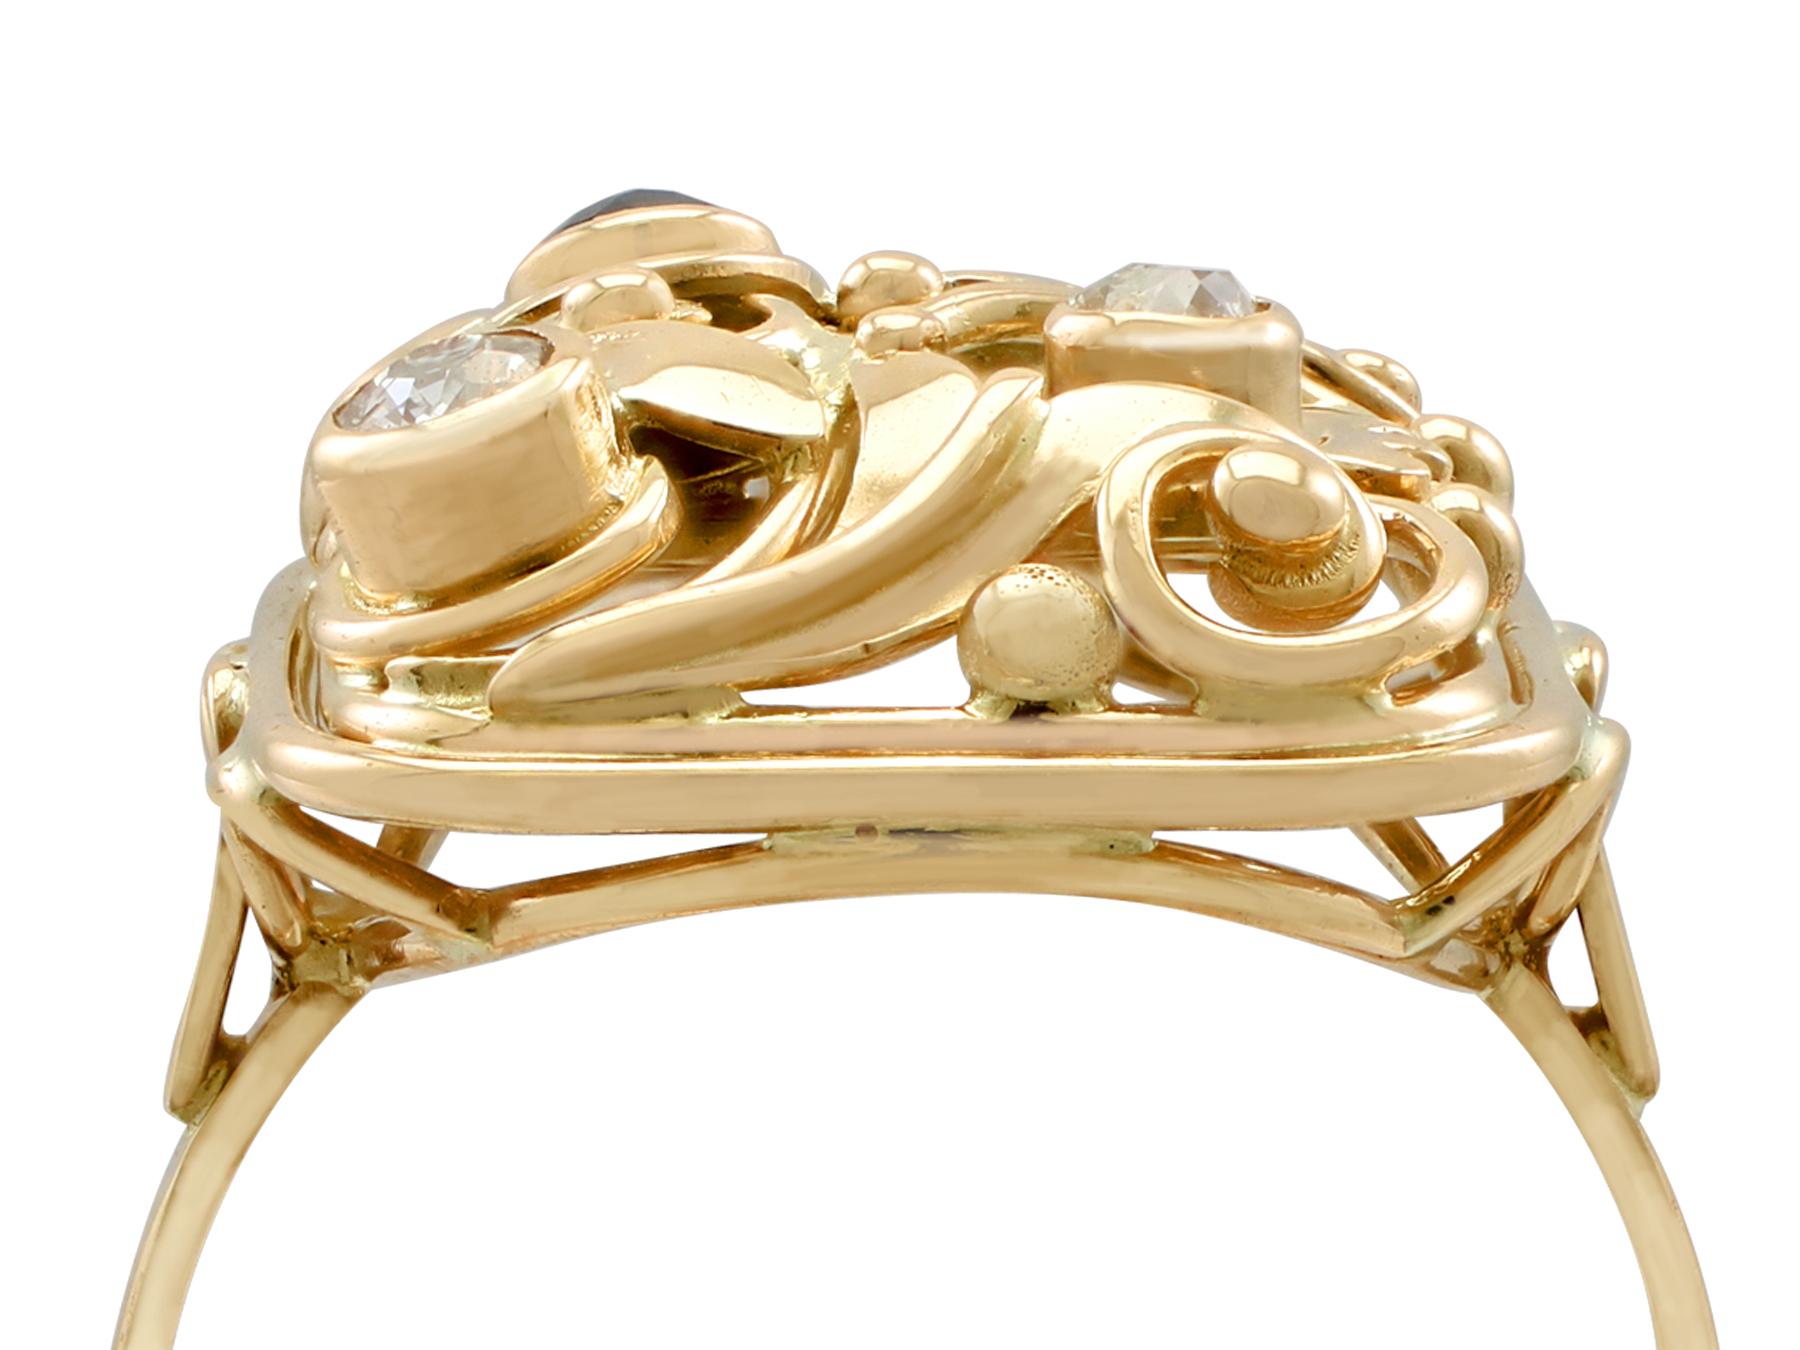 Eine beeindruckende Vintage 1940's 0,10 Karat Saphir und 0,20 Karat Diamant, 14 Karat Gelbgold Kleid Ring; Teil unserer vielfältigen Vintage-Schmuck und Nachlassschmuck Sammlungen.

Dieser feine und beeindruckende Vintage-Saphirring ist aus 14 Karat